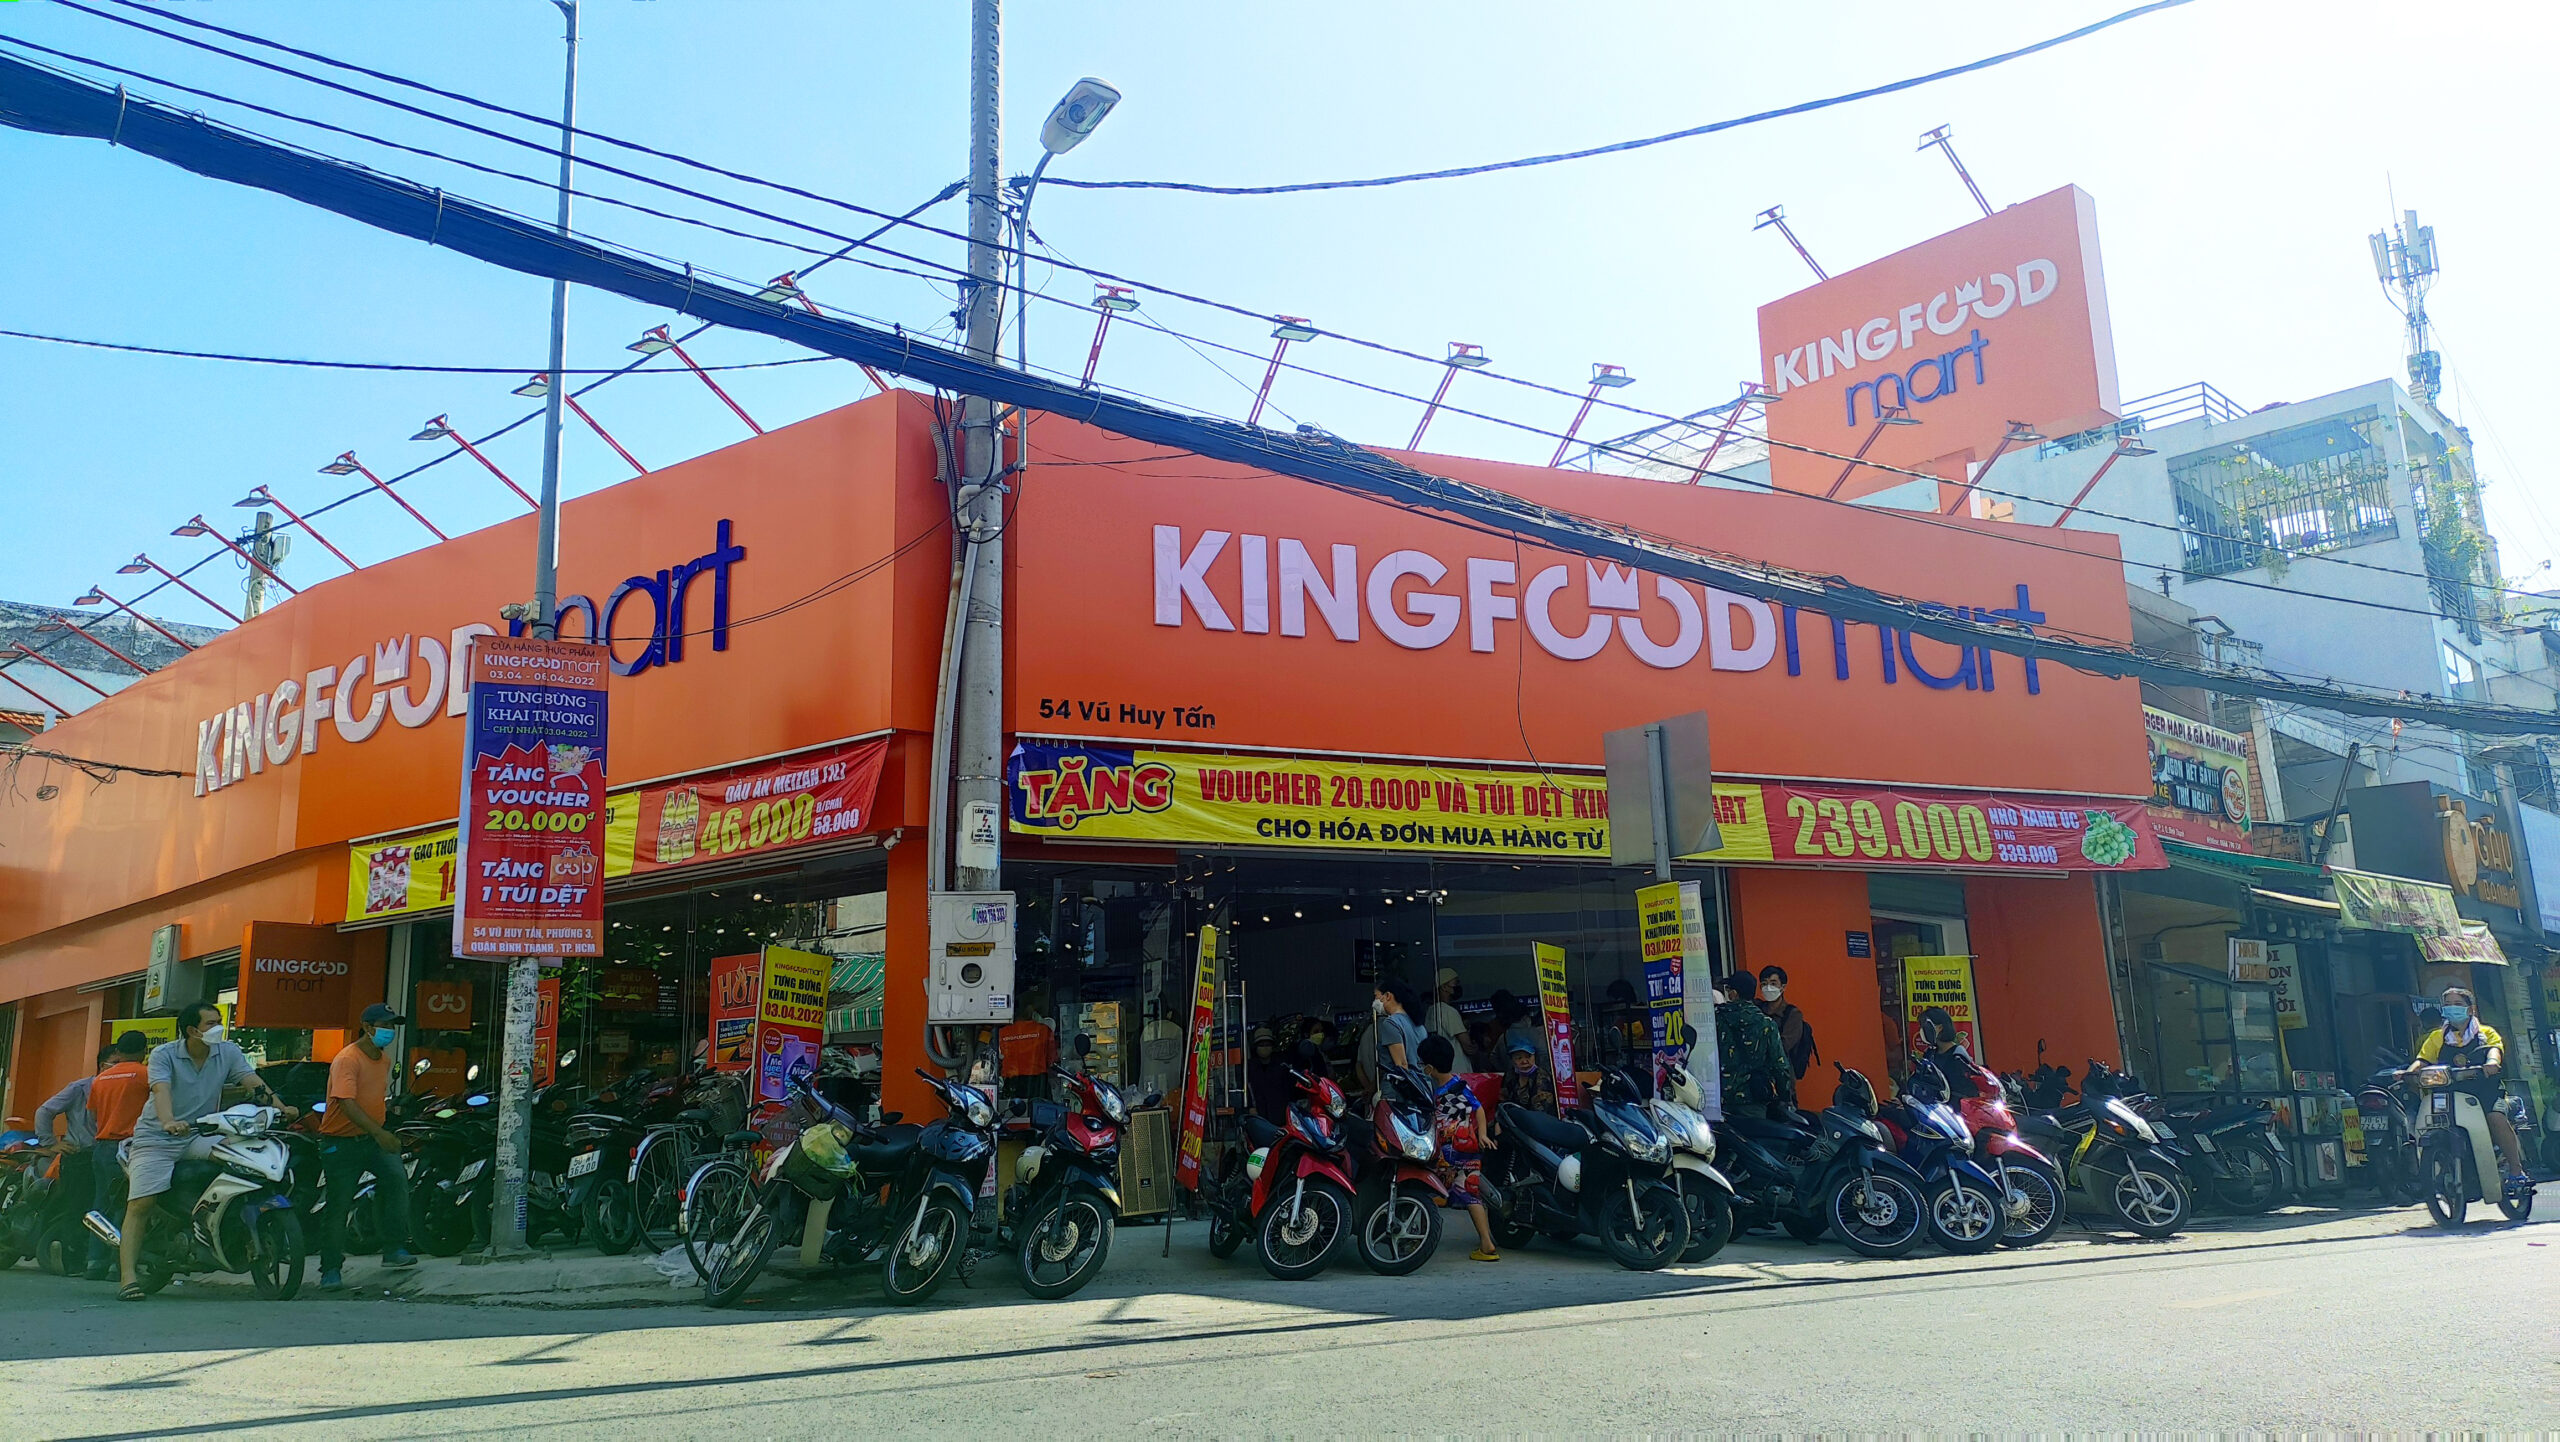 Kingfoodmart Vũ Huy Tấn, Quận Bình Thạnh